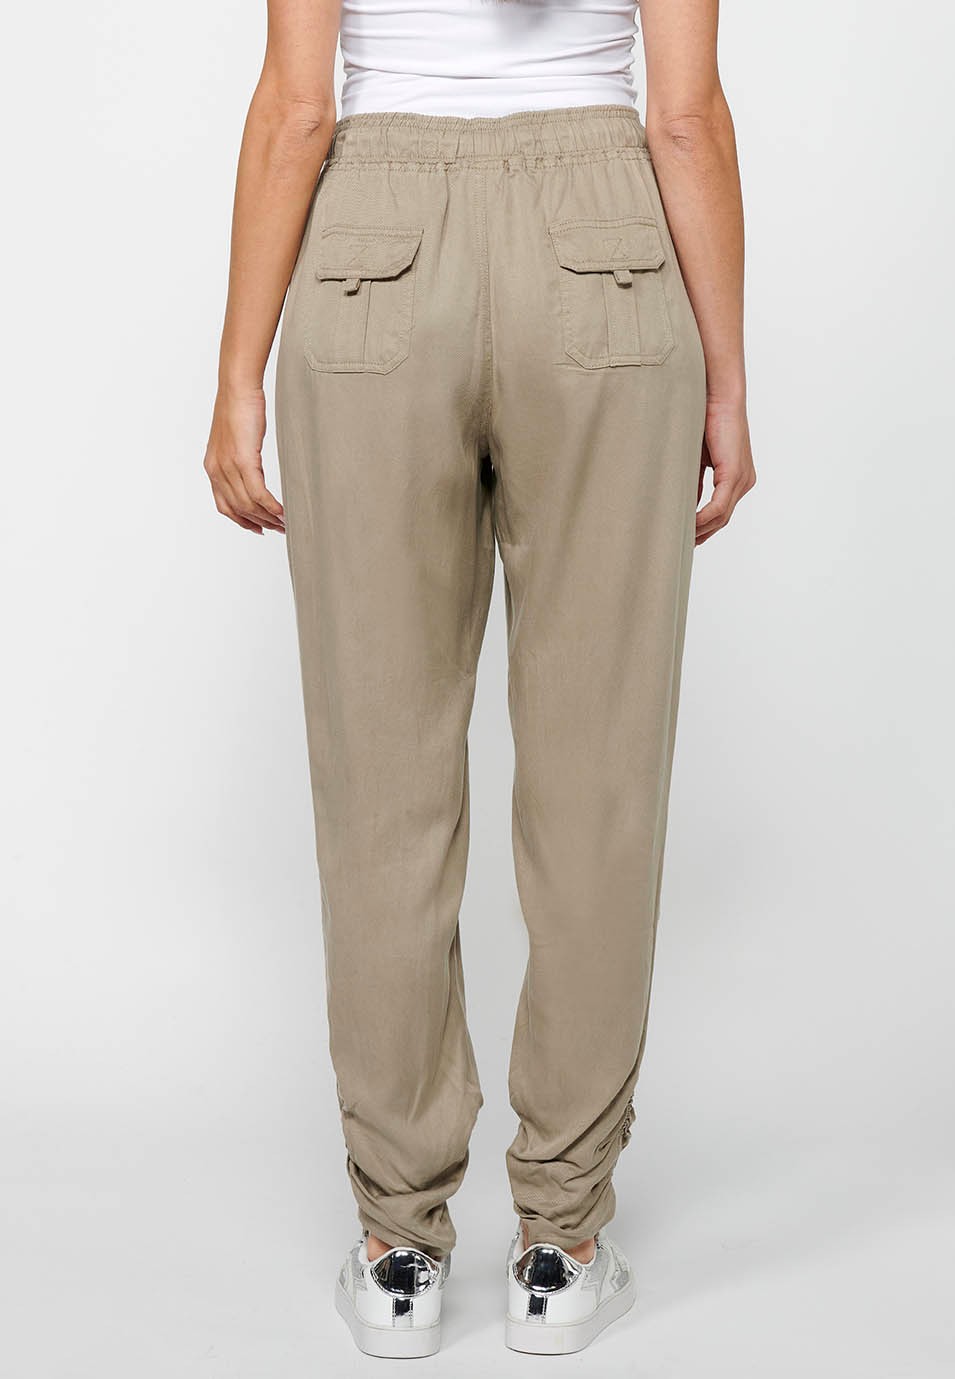 Pantalón largo jogger con Acabado rizado y Cintura engomada con Cuatro bolsillos, dos traseros con solapa de Color Gris para Mujer 4